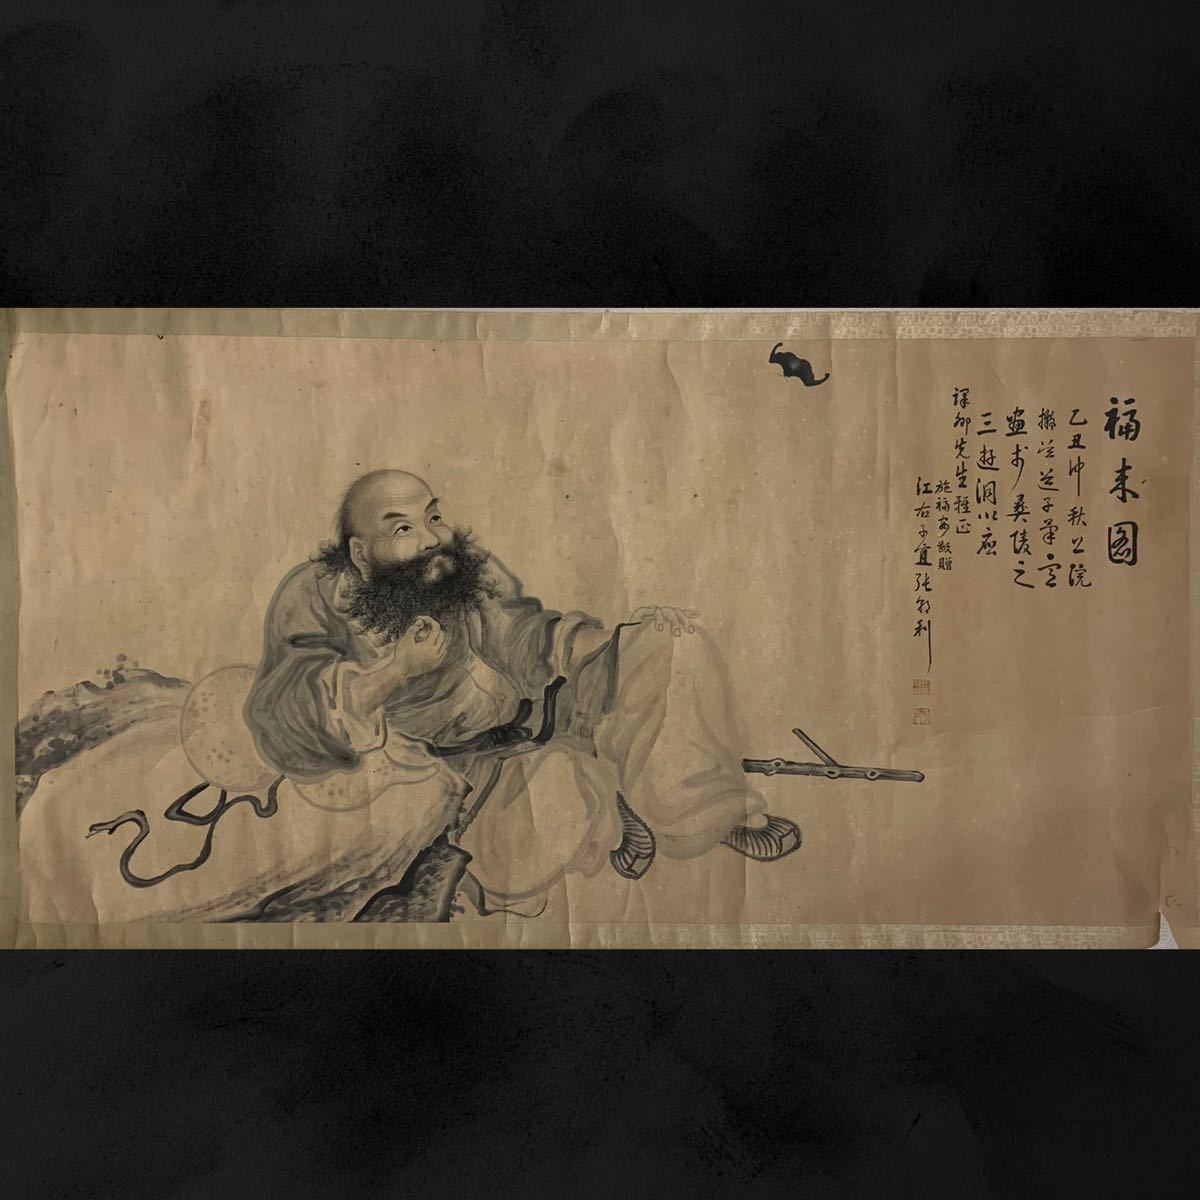 【模写】(藺72)在銘 子宜 まくり 中国美術 時代 画寸約67×134㎝, 美術品, 絵画, その他